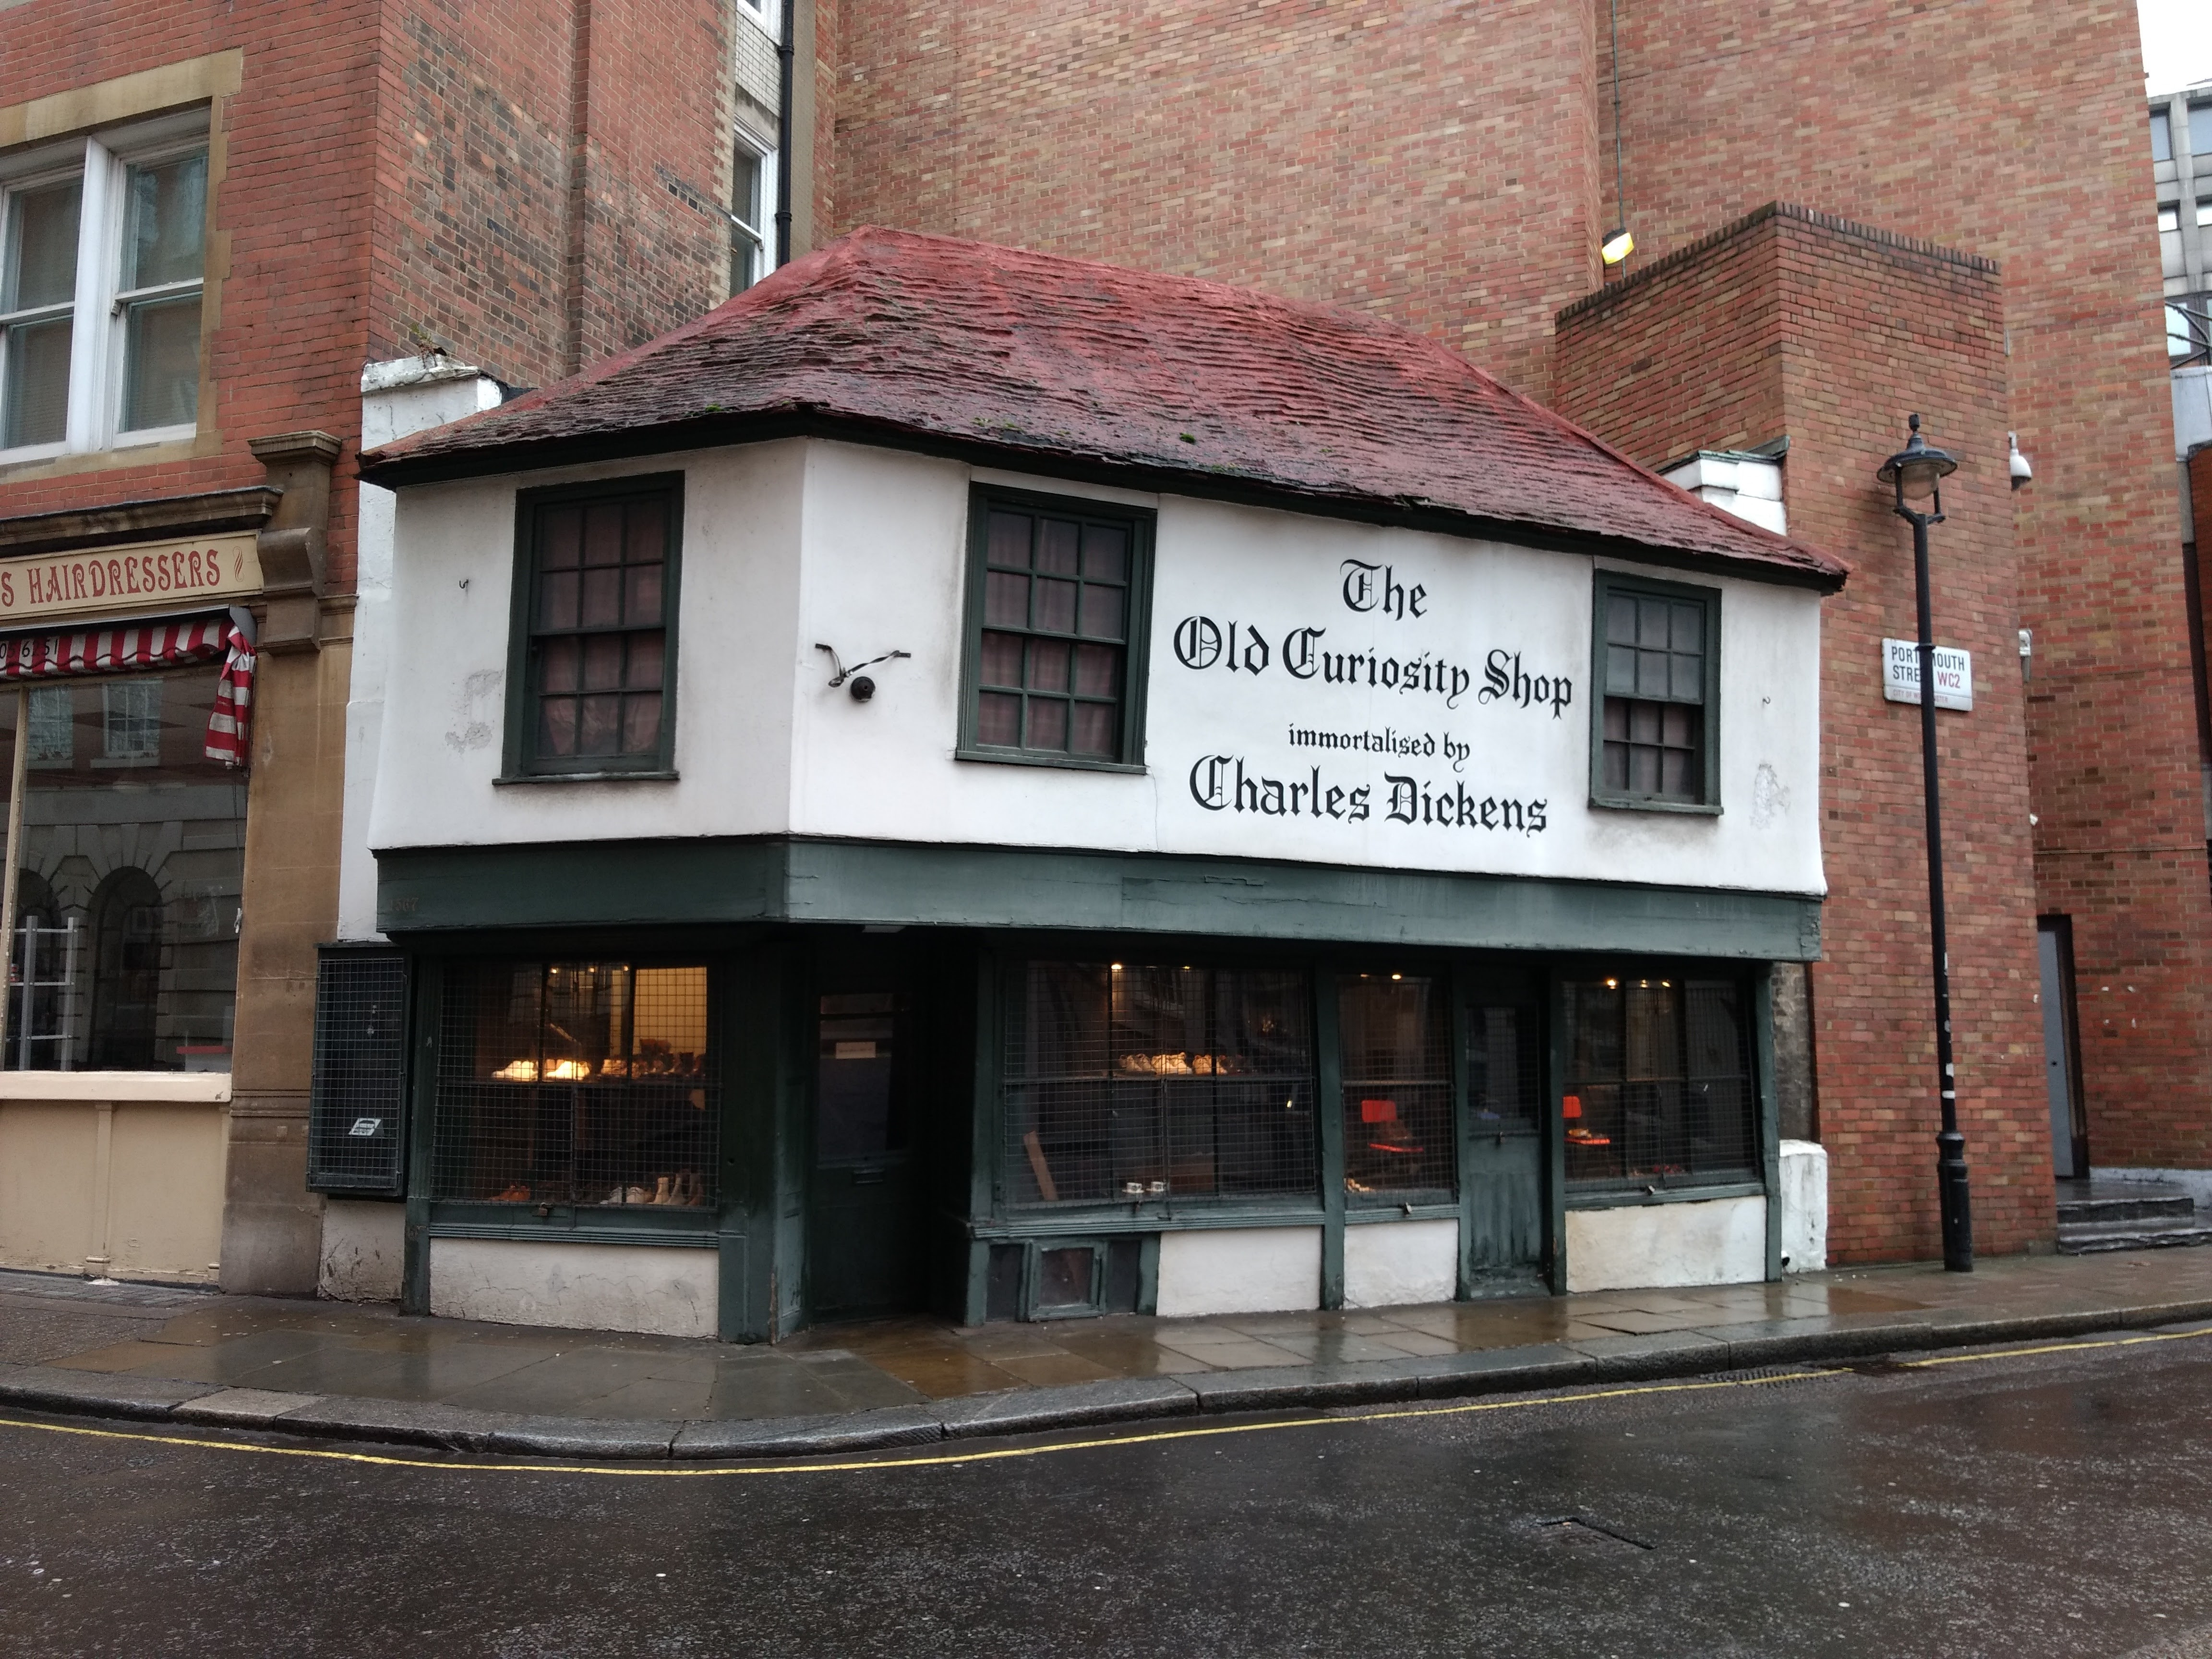 В&nbsp;Лондоне есть магазин The Old Curiosity Shop («Лавка древностей»). Это одно из&nbsp;старейших зданий Лондона. А&nbsp;своё нынешнее название оно получило в&nbsp;XIX веке на&nbsp;волне популярности книги Диккенса